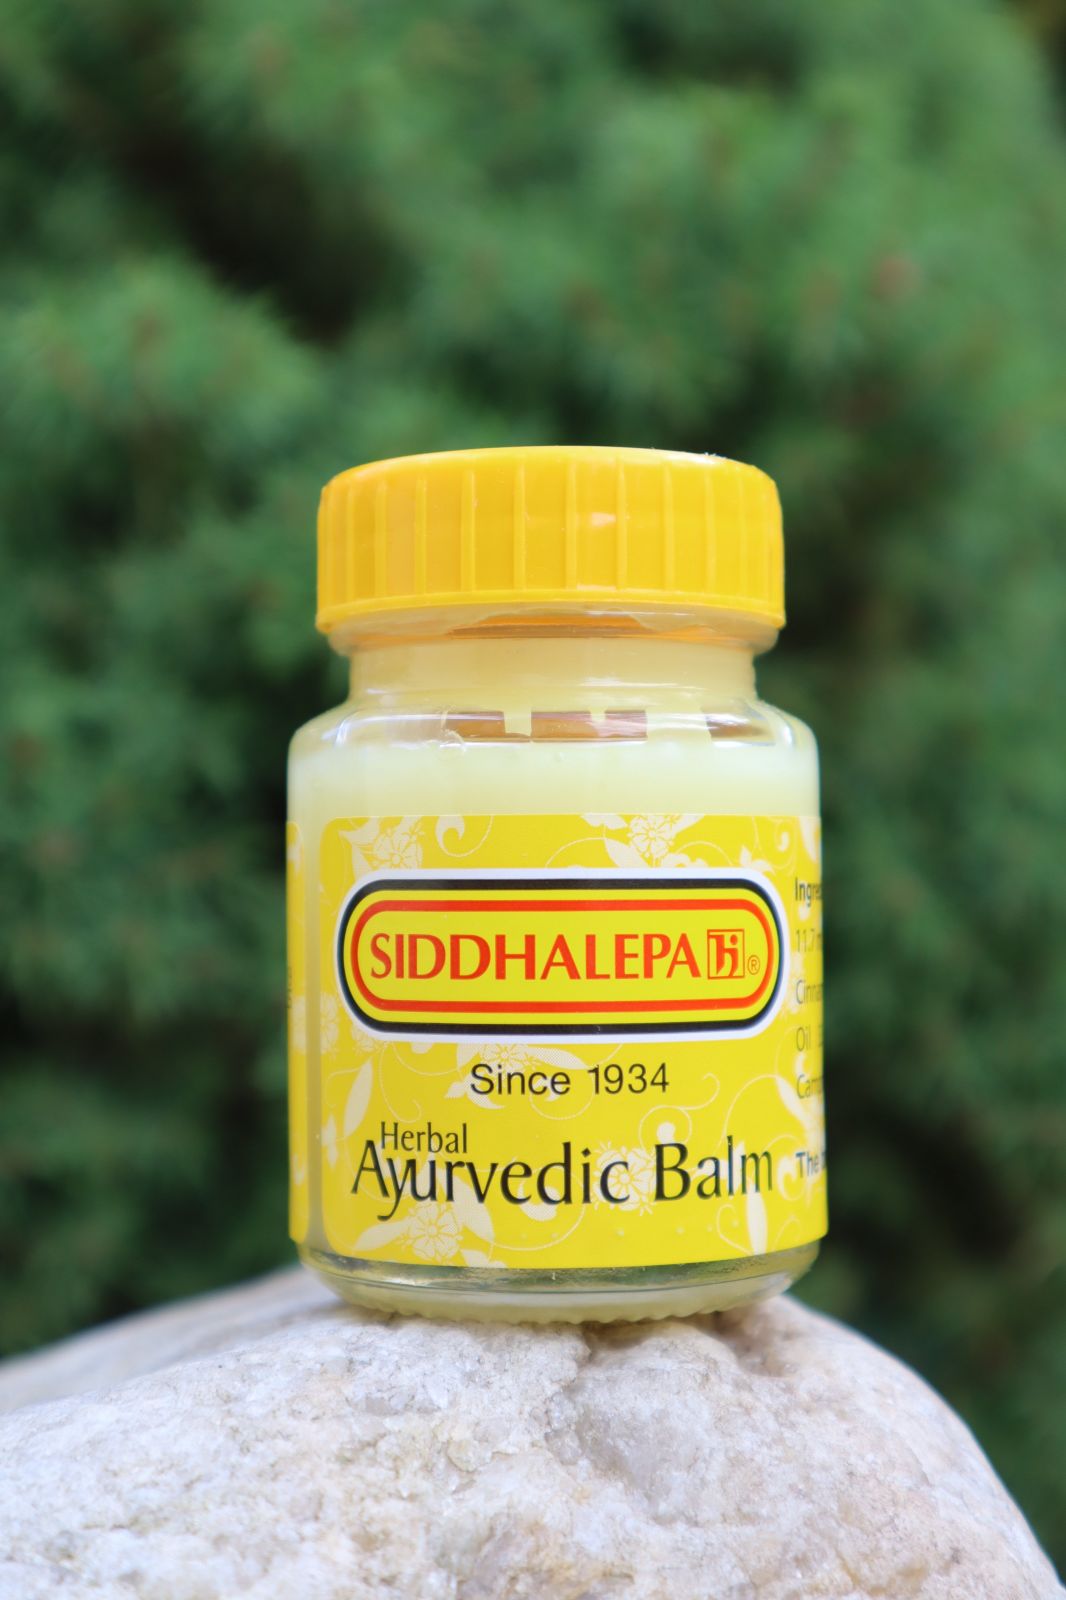 Ayurvédskej BYLINNÝ BALZAM Siddhalepa 50 g proti bolesti svalov, kĺbov, hlavy, bolesti v krku, pomoc pri chrípke, pri pichnutie hmyzom a mnoho ďalšieho ......